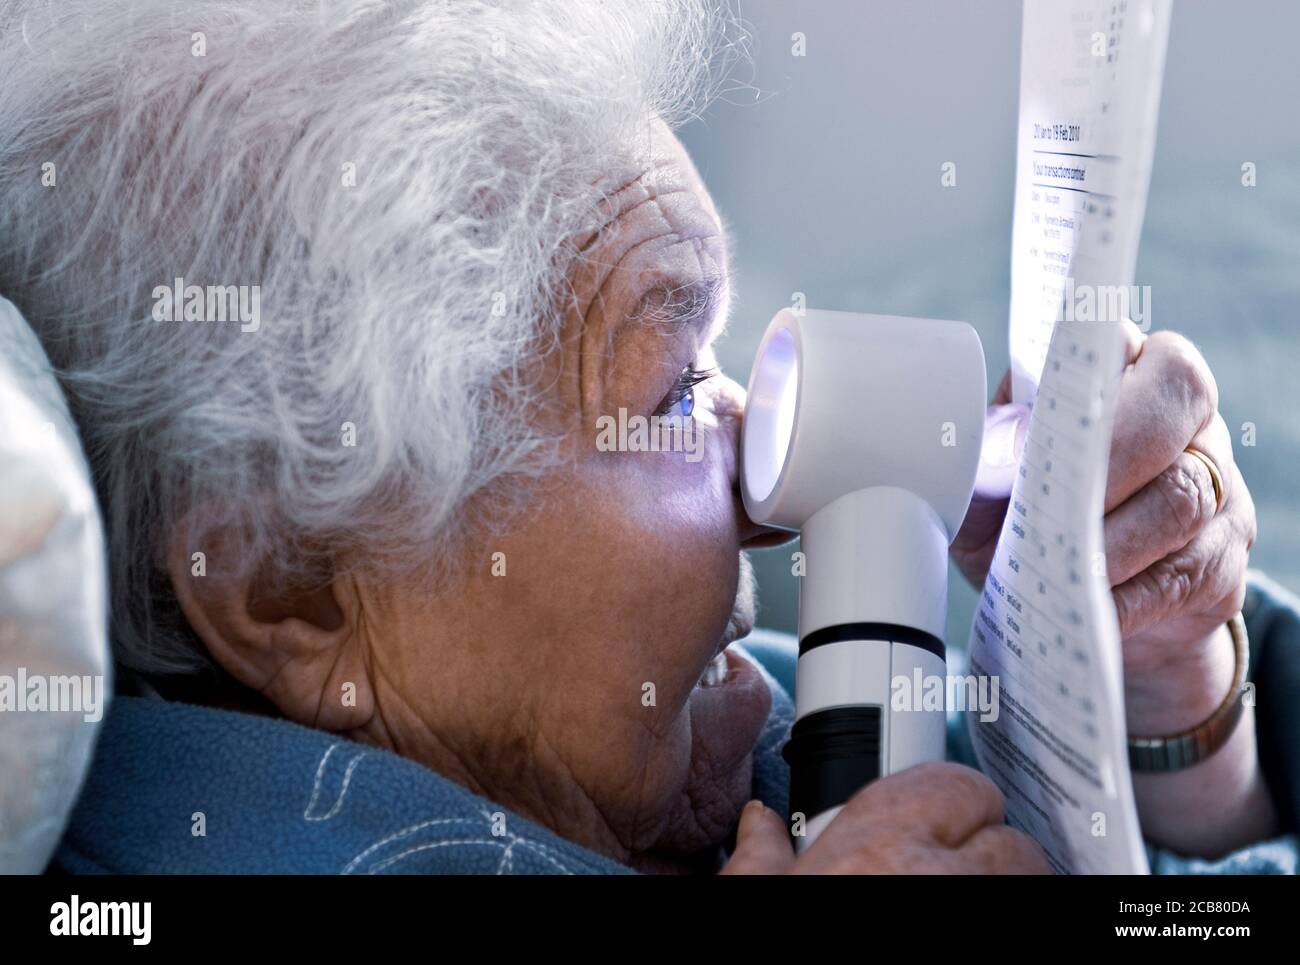 Anciana anciana anciana independiente anciana con degeneración macular leyendo un estado financiero en casa usando una poderosa lupa con luz función Foto de stock